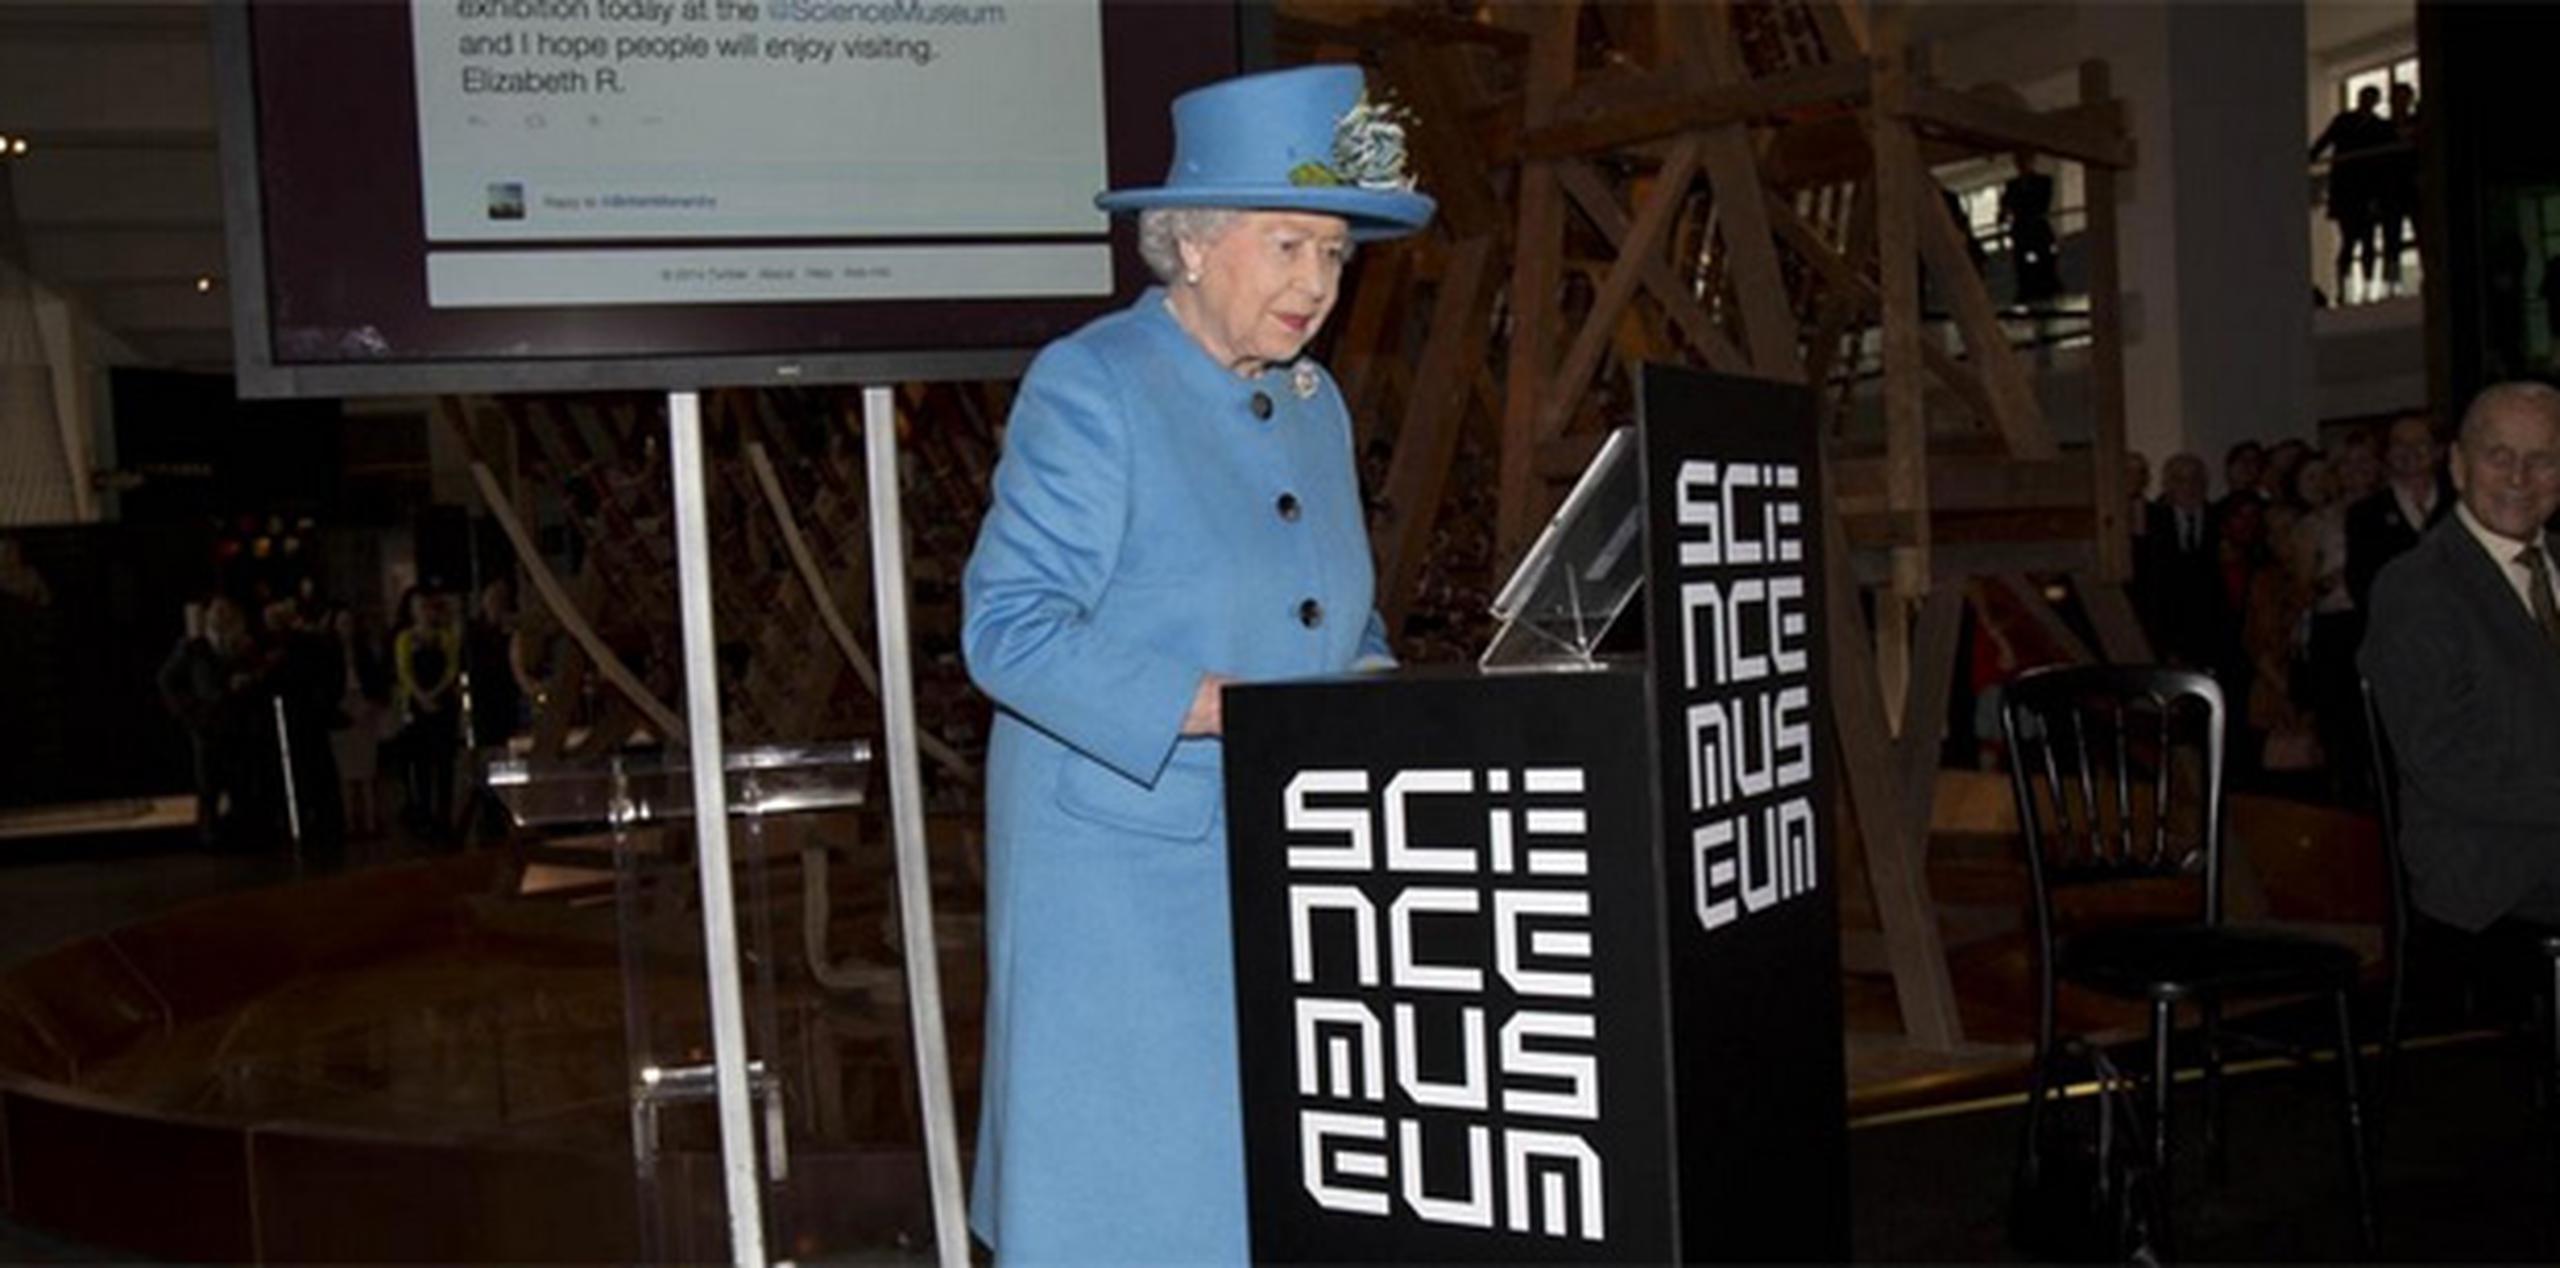 Isabel II se quitó uno de sus guantes y envió el mensaje desde la cuenta @BritishMonarchy. (https://twitter.com/sciencemuseum)